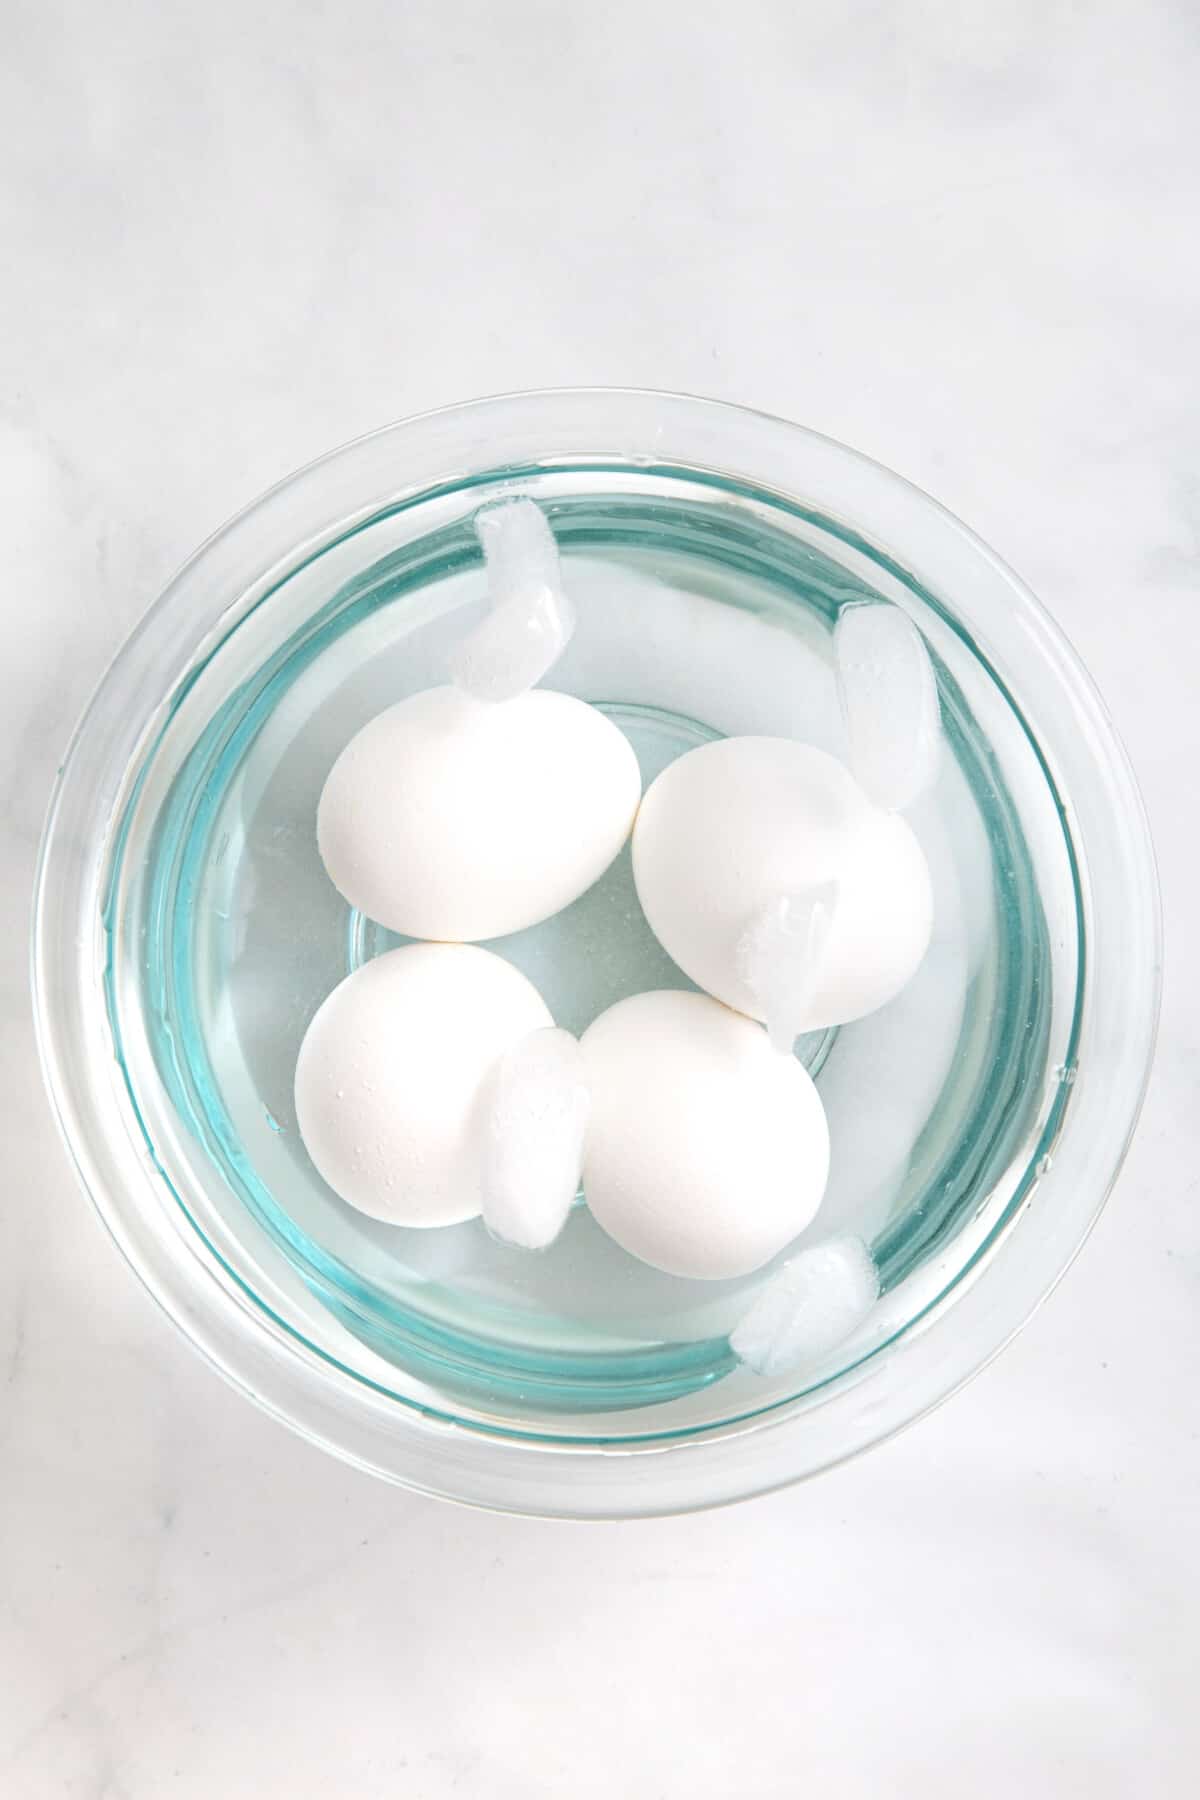 step 2 to make air fryer eggs, put eggs in an ice bath.